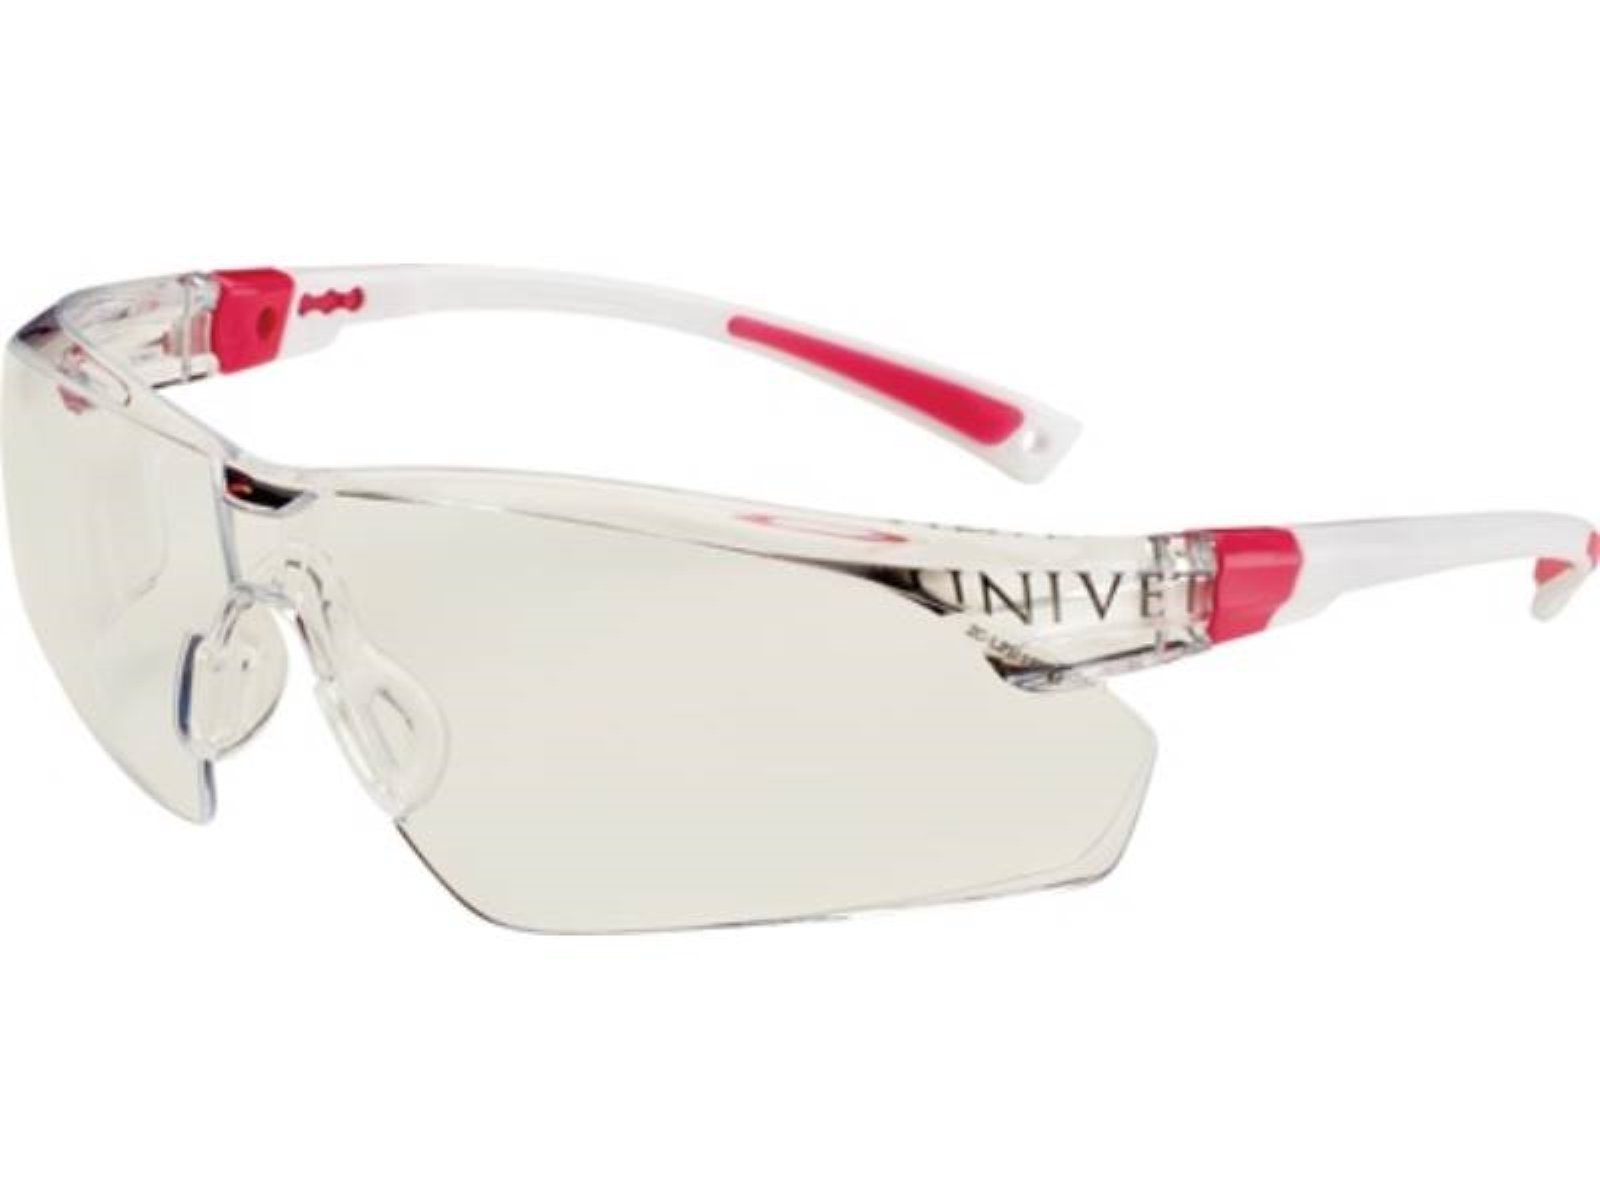 Univet Arbeitsschutzbrille Schutzbrille 506 UP EN 166,EN 170 Bügel weiß rosa,Scheibe klar PC UN